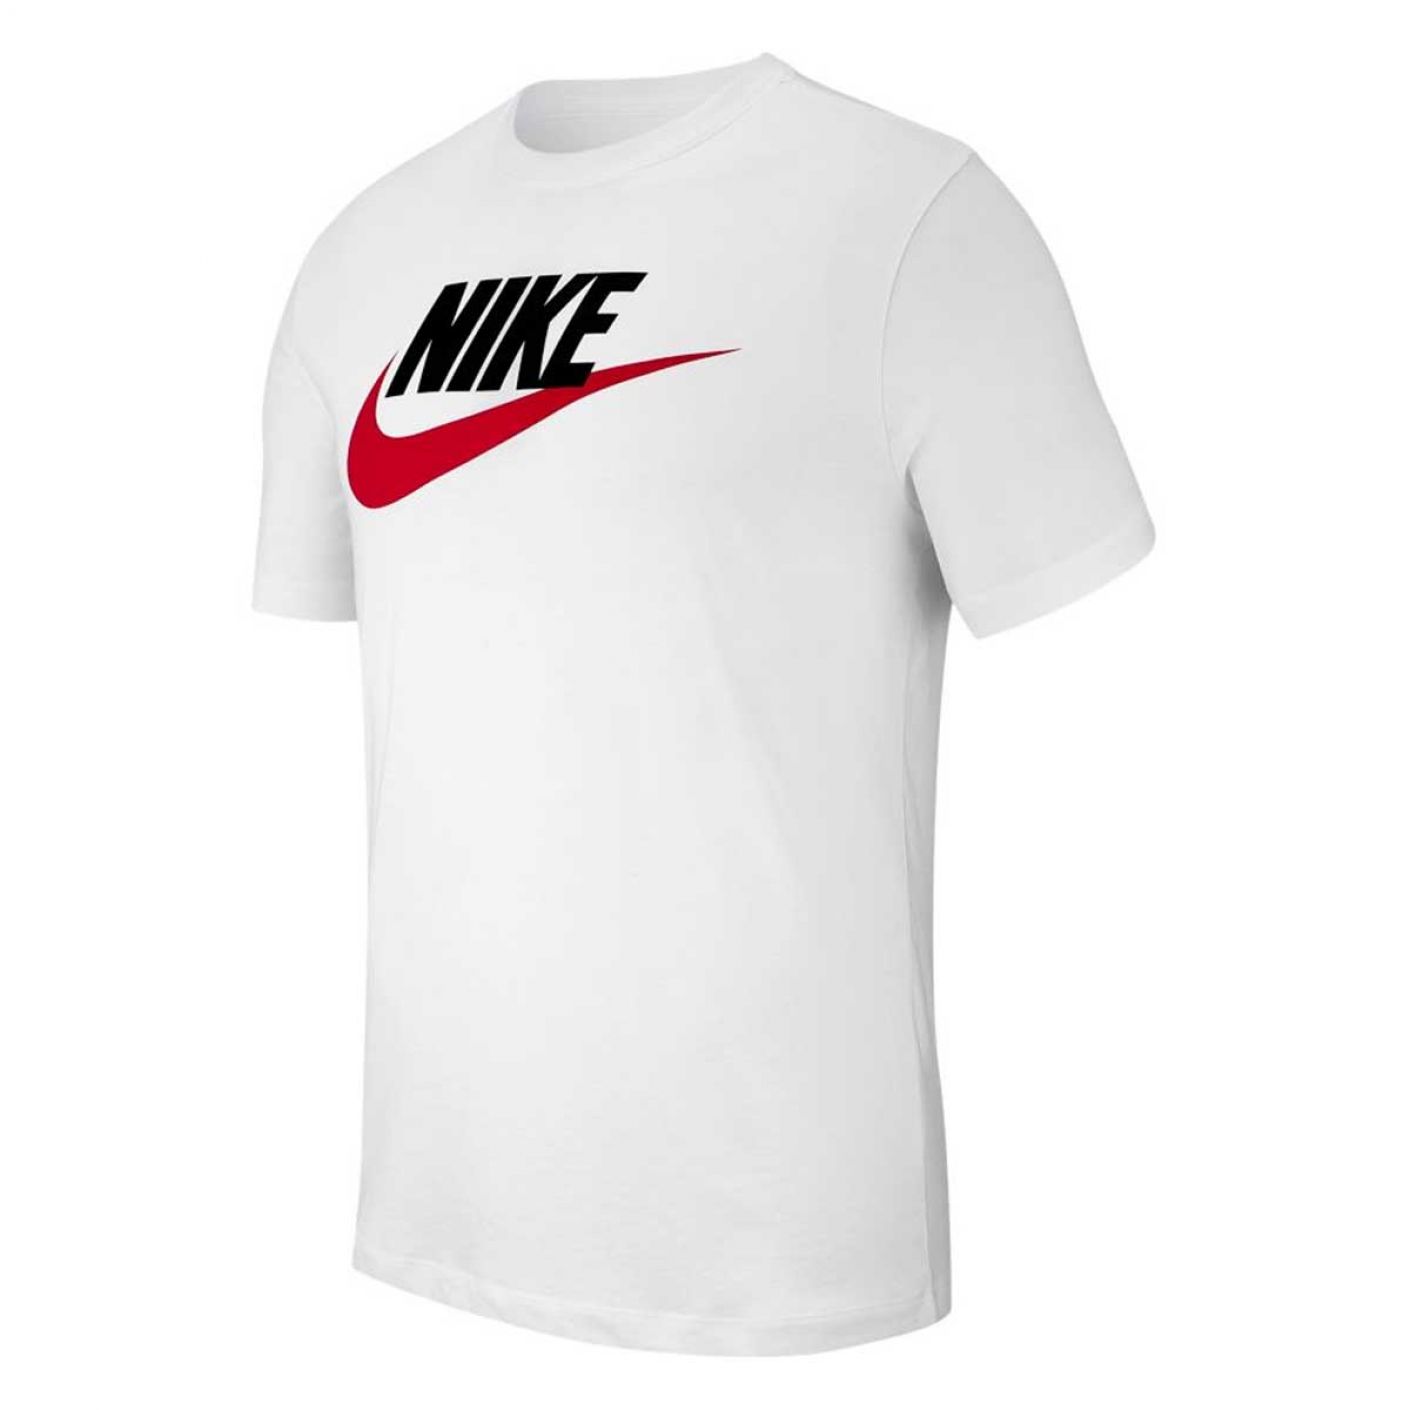 Nike Men's Sportswear Jersey White T-Shirt